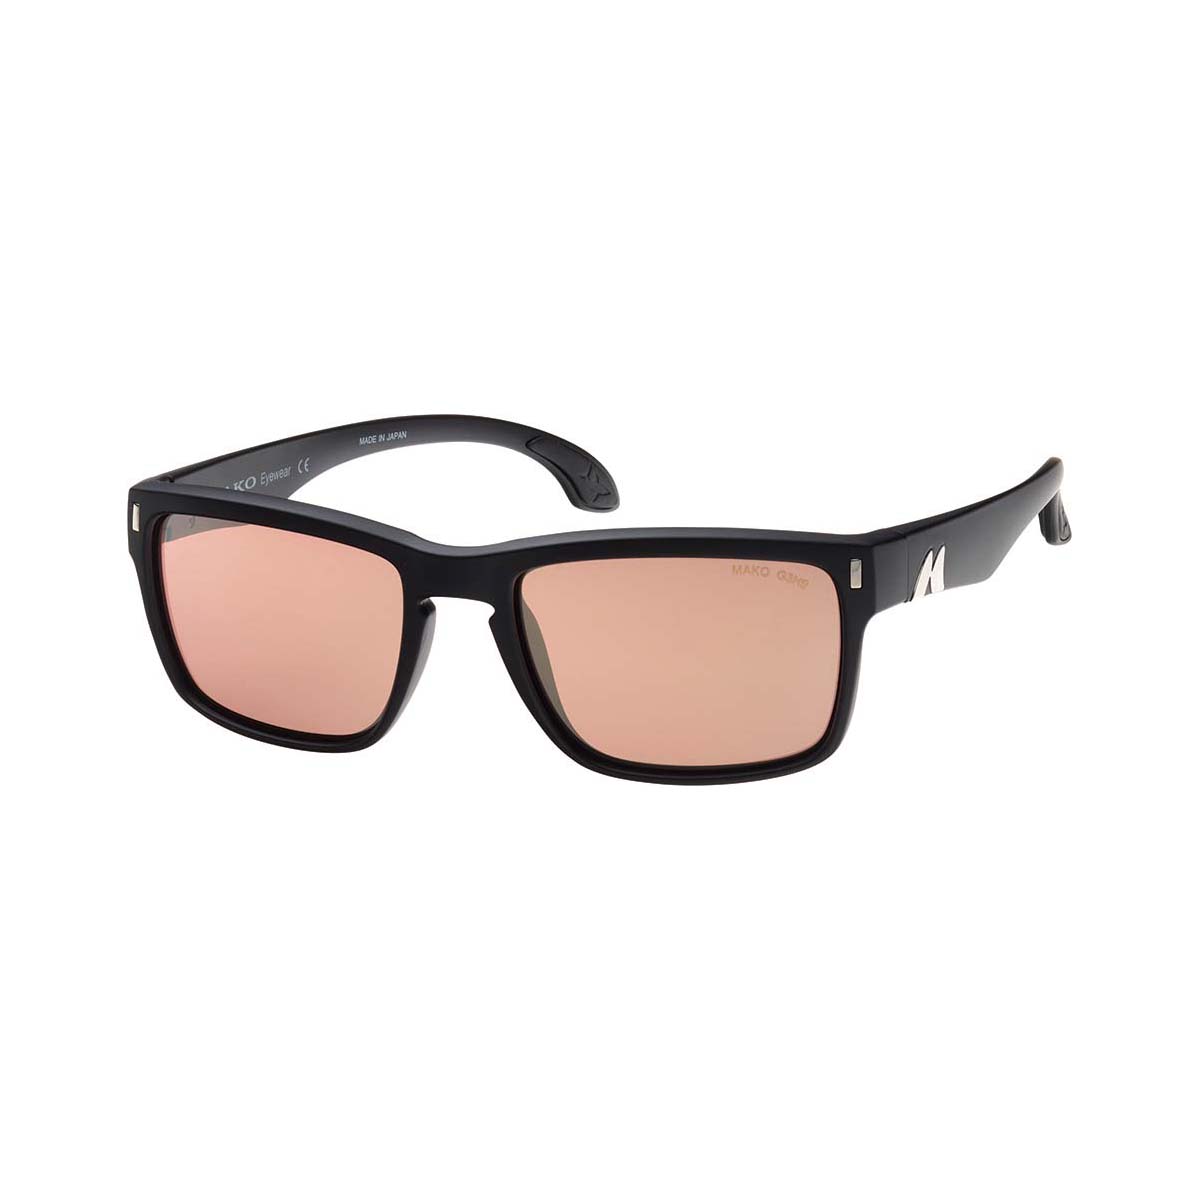 MAKO GT Polarised Men's Sunglasses Black with Orange Lens